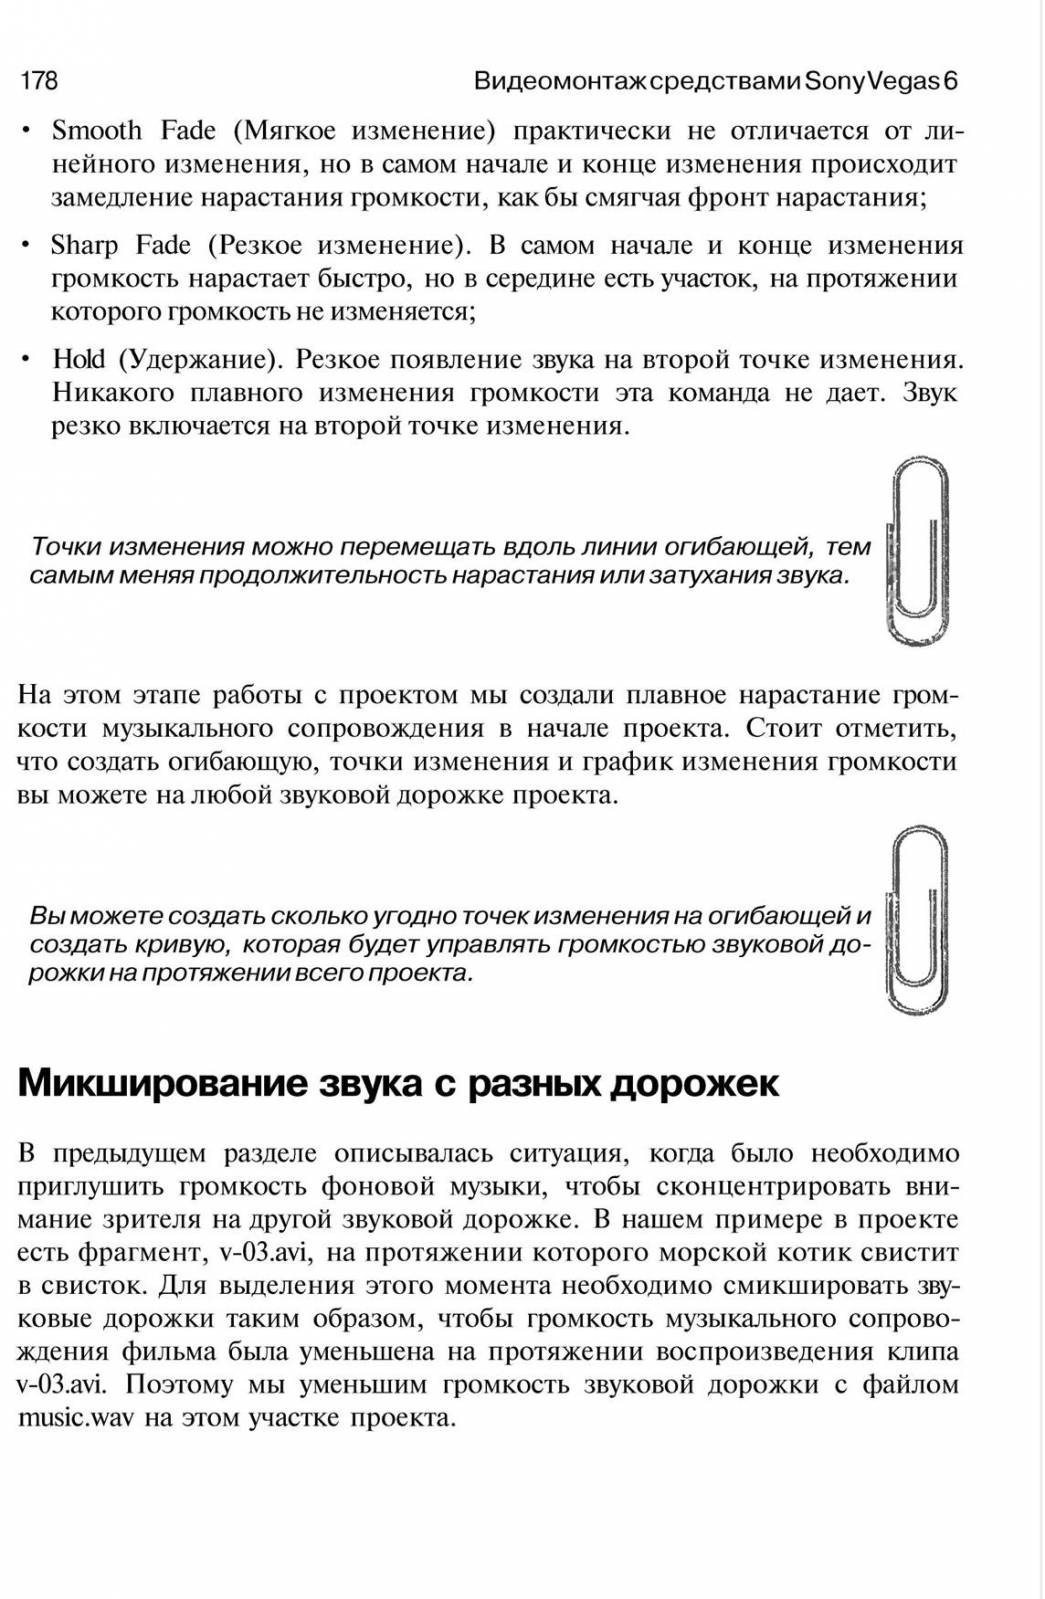 http://redaktori-uroki.3dn.ru/_ph/6/735189984.jpg